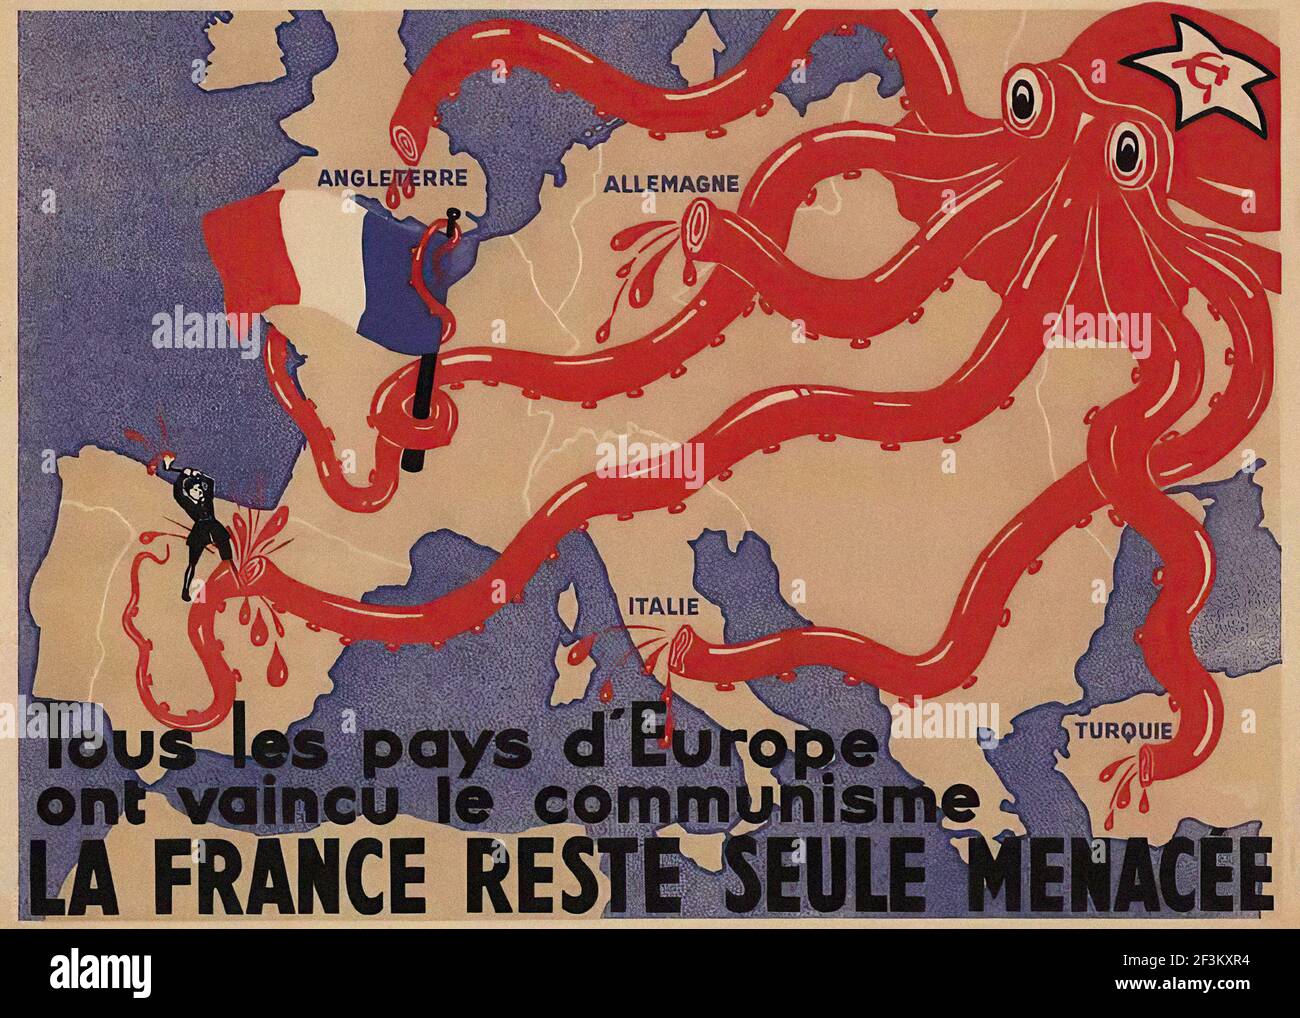 Französisches antikommunistisches Propagandaplakat. Alle Länder Europas haben es geschafft, die kommunistische Bedrohung zu überwinden. Nur für Frankreich fährt es fort zu po Stockfoto